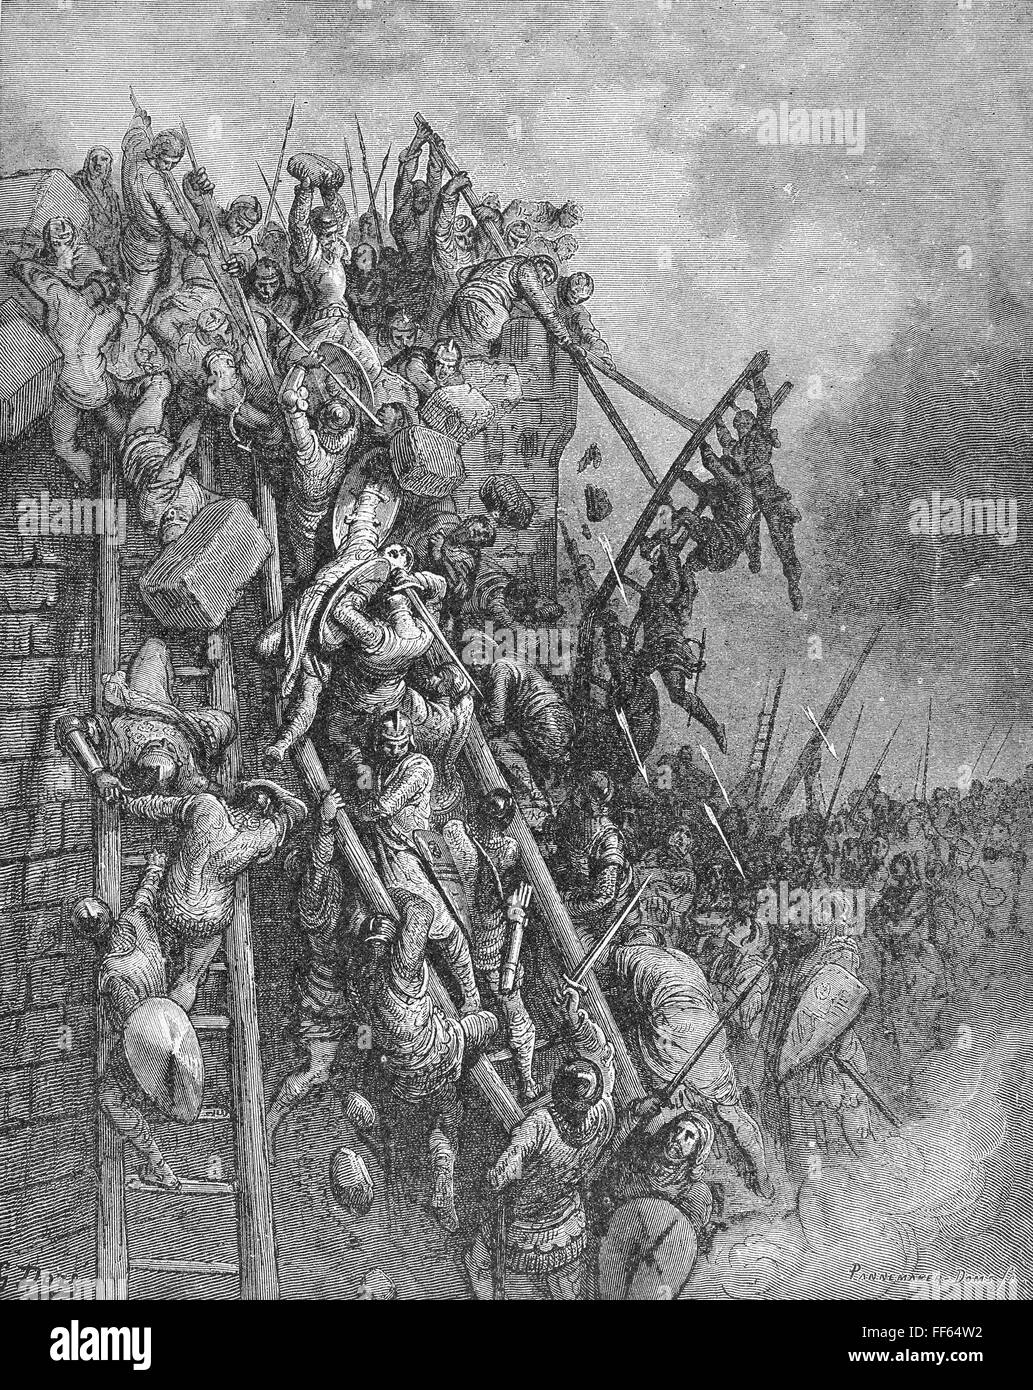 KRIEGSFÜHRUNG: BELAGERUNG. /nCrusaders Erfassung von Antiochien im Jahre 1098. Holzstich, 19. Jahrhundert, nach Gustave DorΘ. Stockfoto